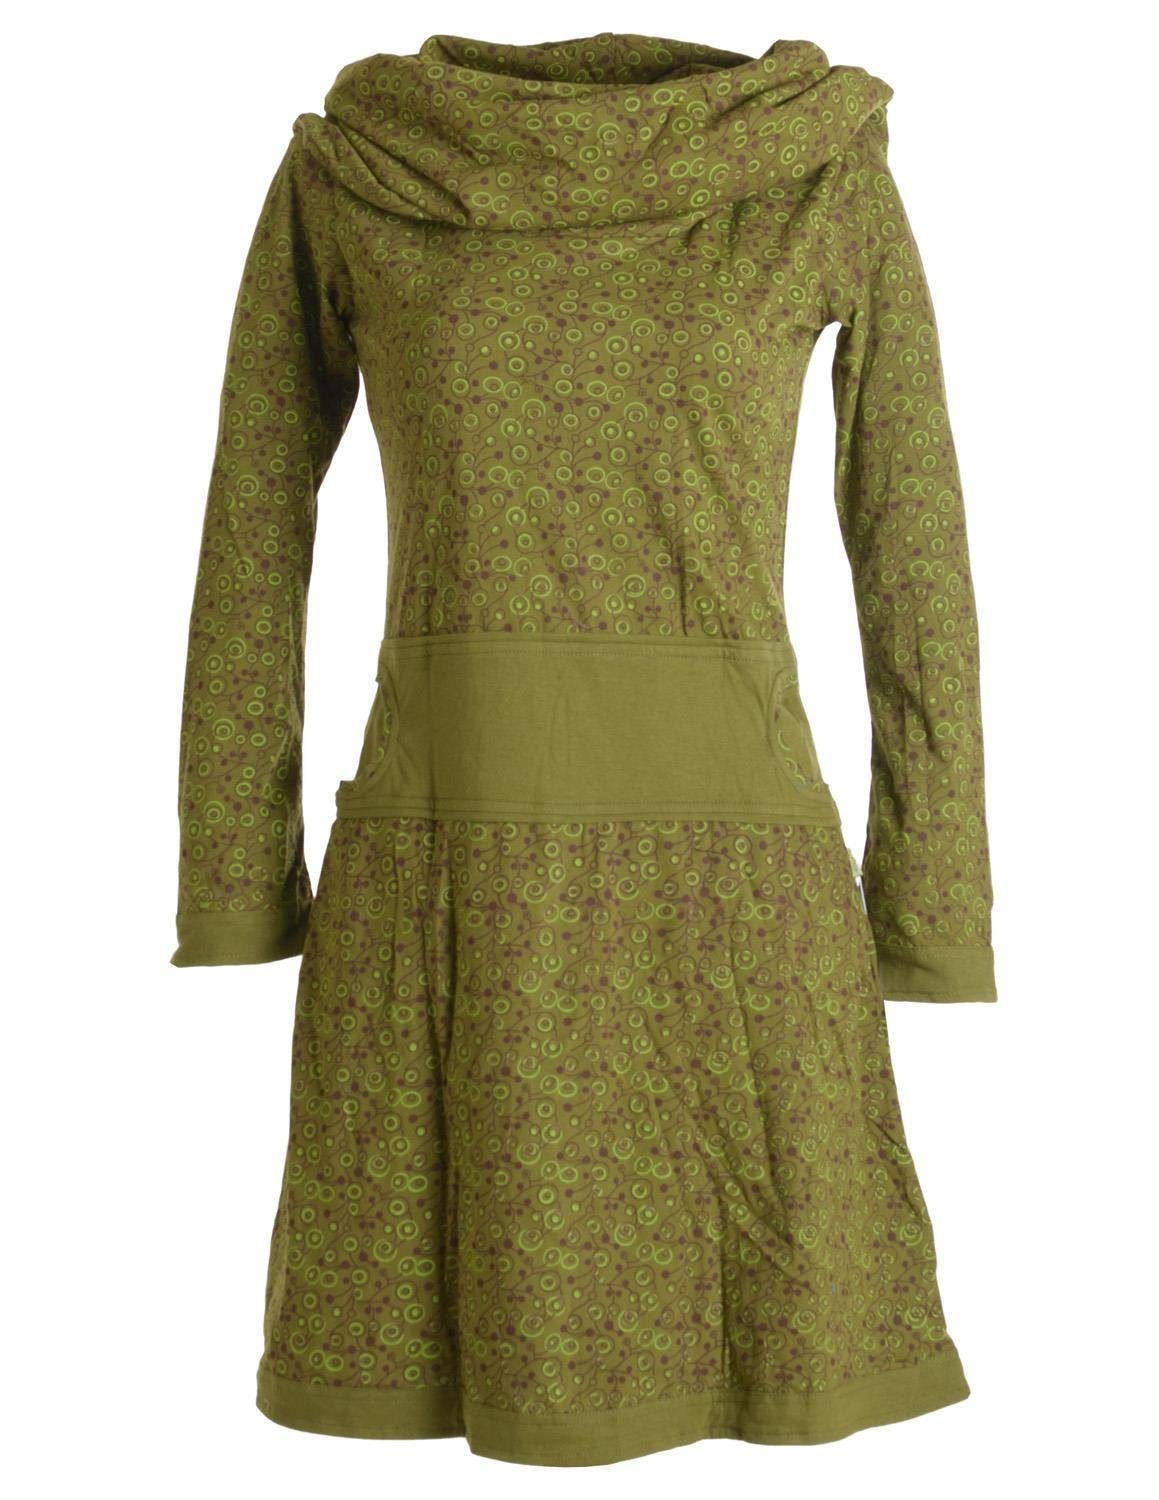 Vishes Jerseykleid Bedrucktes Kleid Ethno, mit aus Style olive Hippie Goa, Baumwolle Boho, Schalkragen